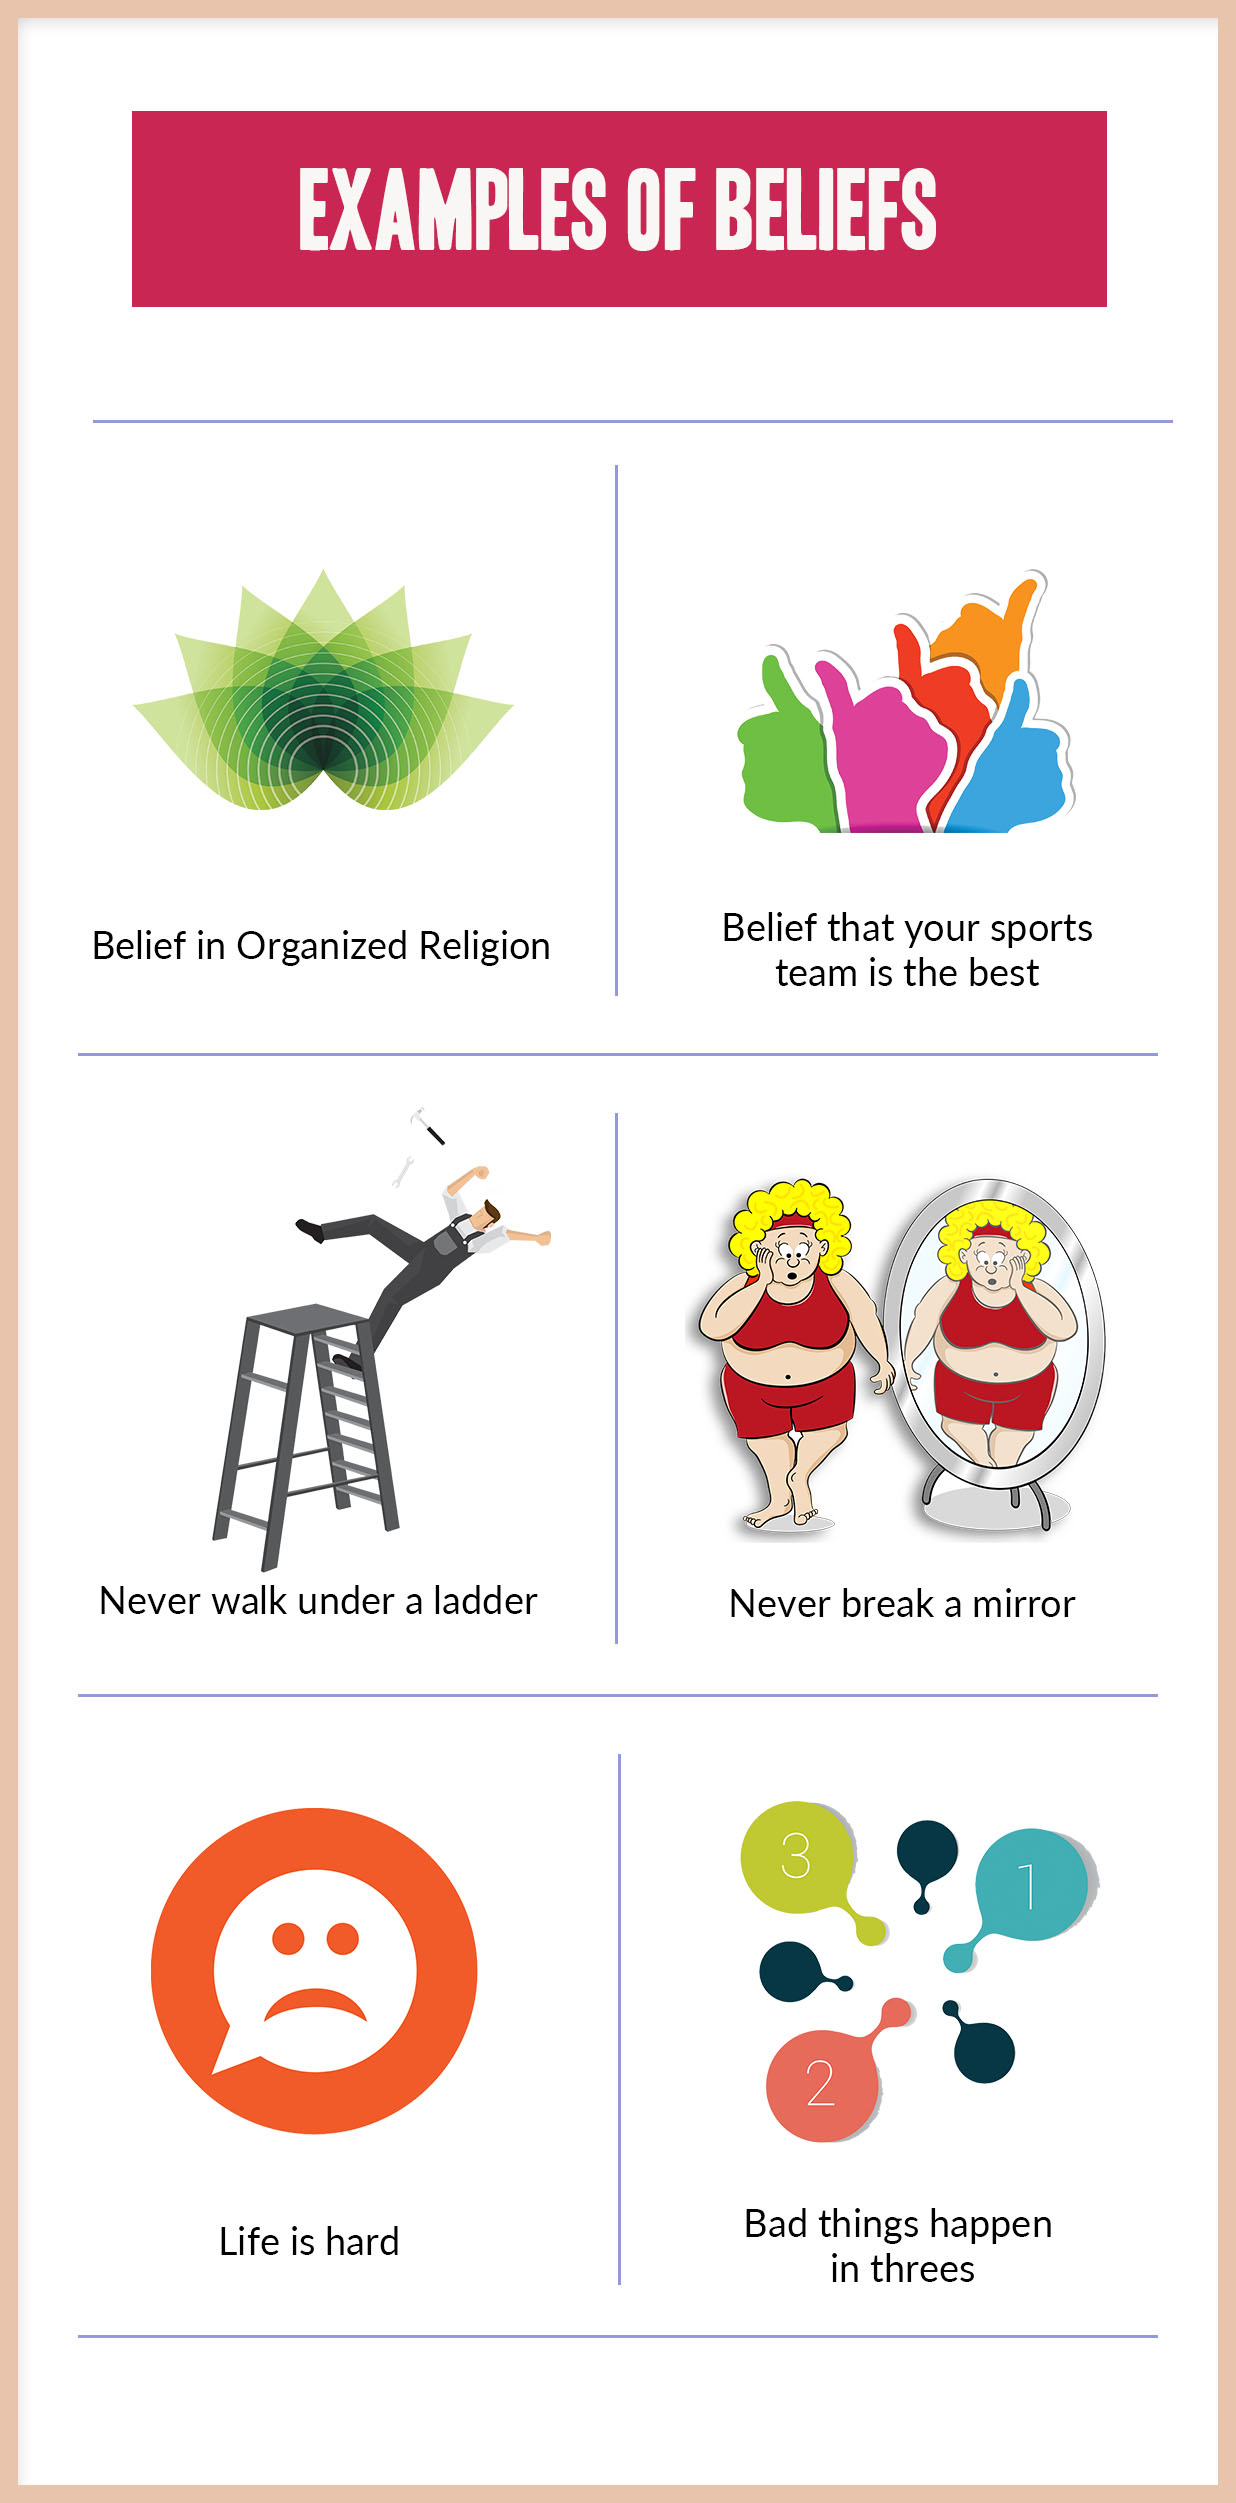 Examples of popular beliefs